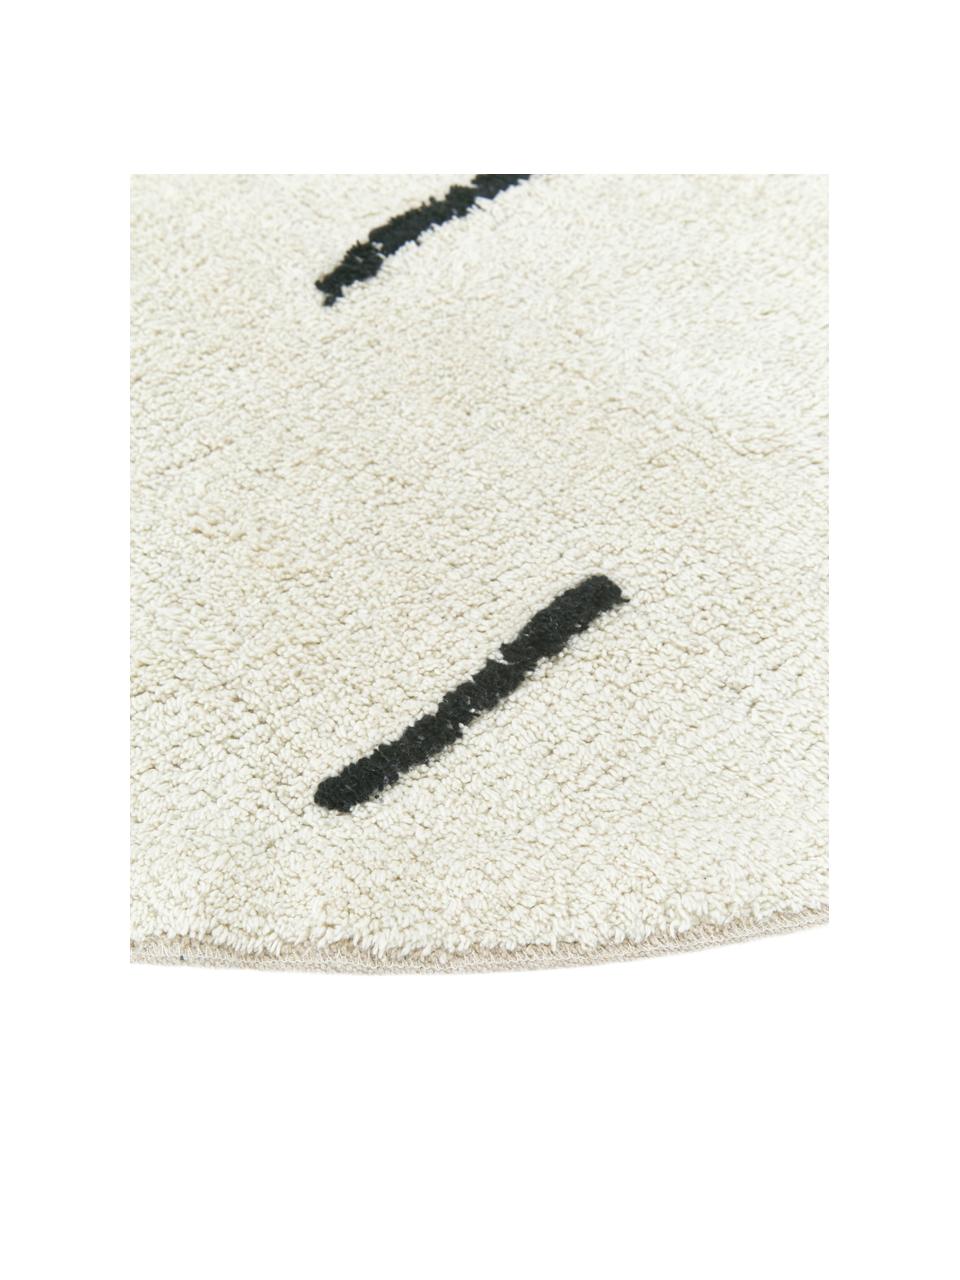 Runder Baumwollteppich Suizo in Ecru, 100% Baumwolle, Ecru, Schwarz, Ø 150 cm (Grösse M)